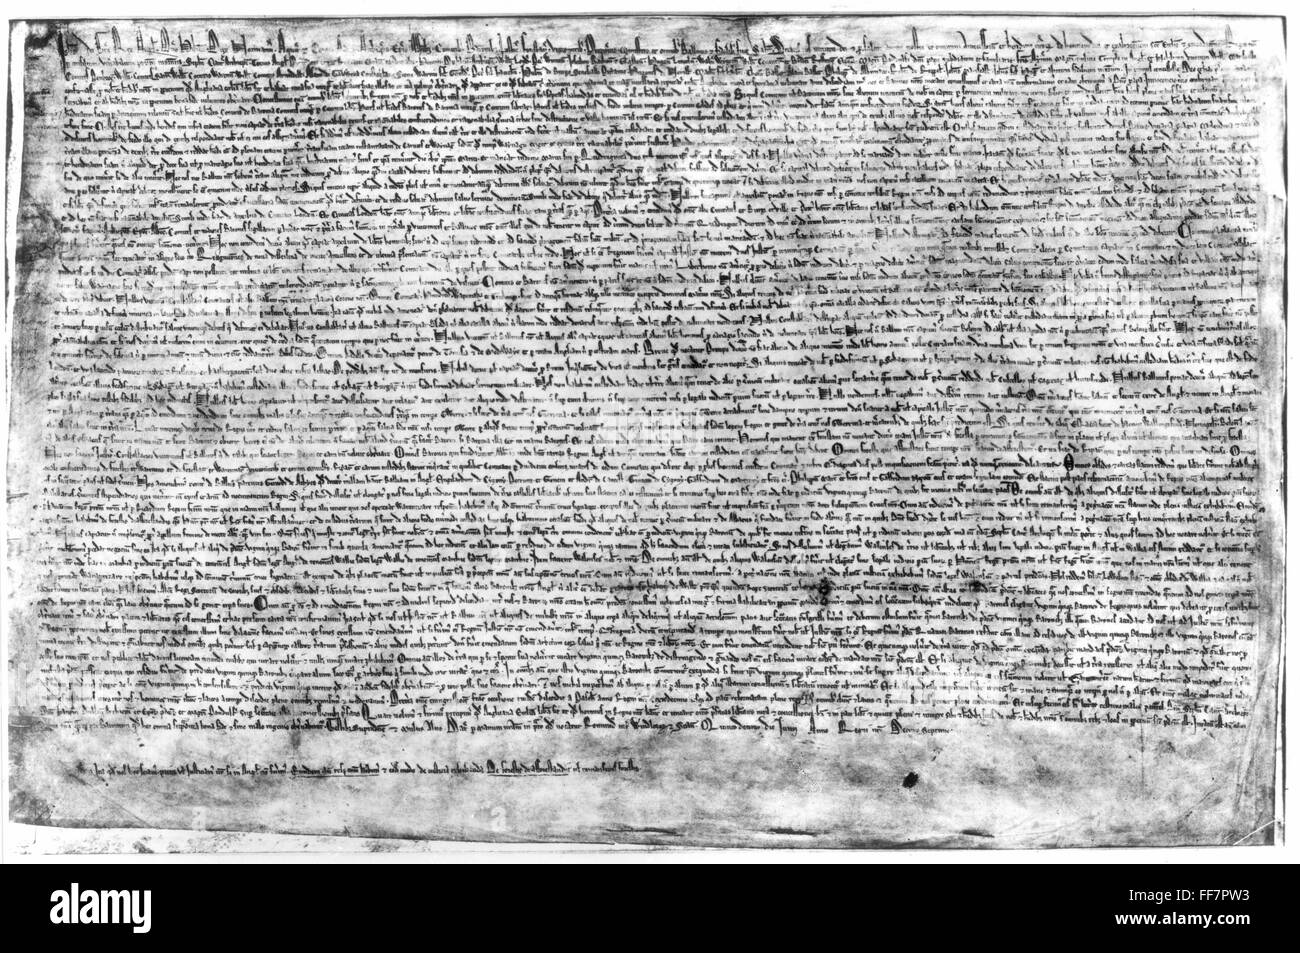 CARTA MAGNA de 1215. /Ninguno de los cuatro sobrevivientes orginal manuscritos de la Gran Carta firmada por el Rey Juan el 15 de junio de 1215. Foto de stock